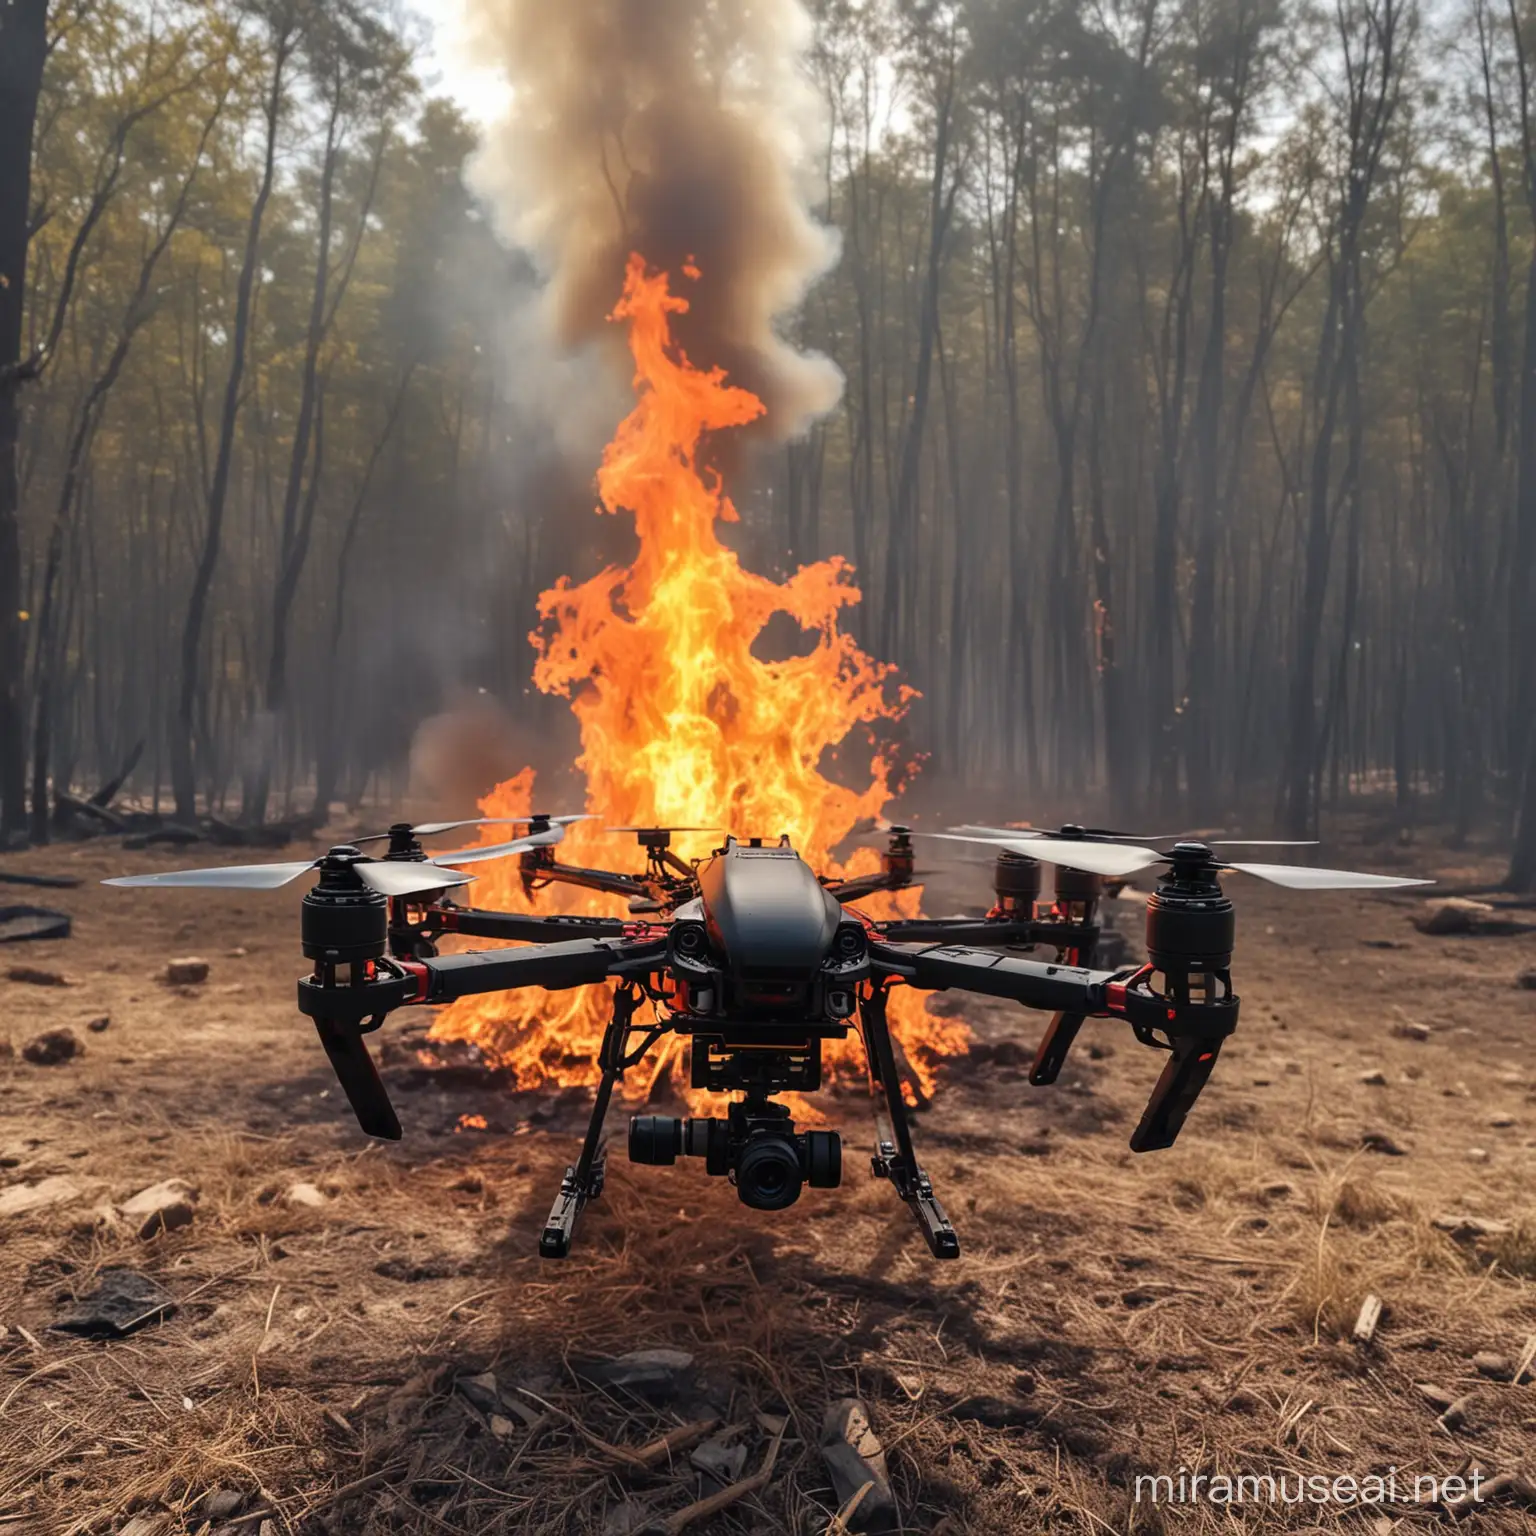 Drone, FPV drone, fire